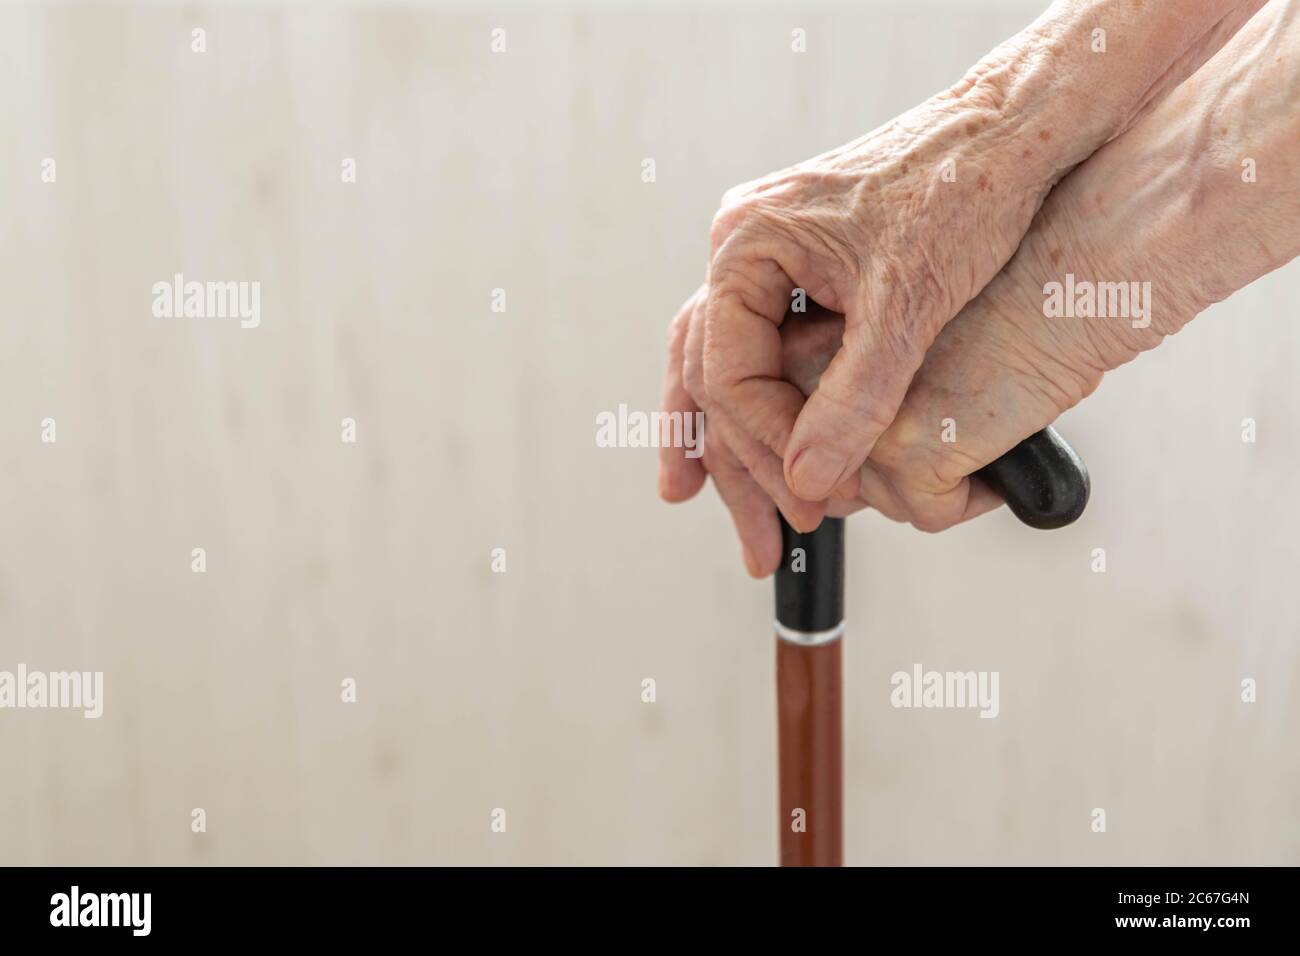 Ältere Hände auf Stock ruhen. Nahaufnahme der Hände einer alten Frau, die einen Gehstock hält. Hände einer Rentnerin auf einem Gehstock Nahaufnahme. Alte Dame Holdi Stockfoto